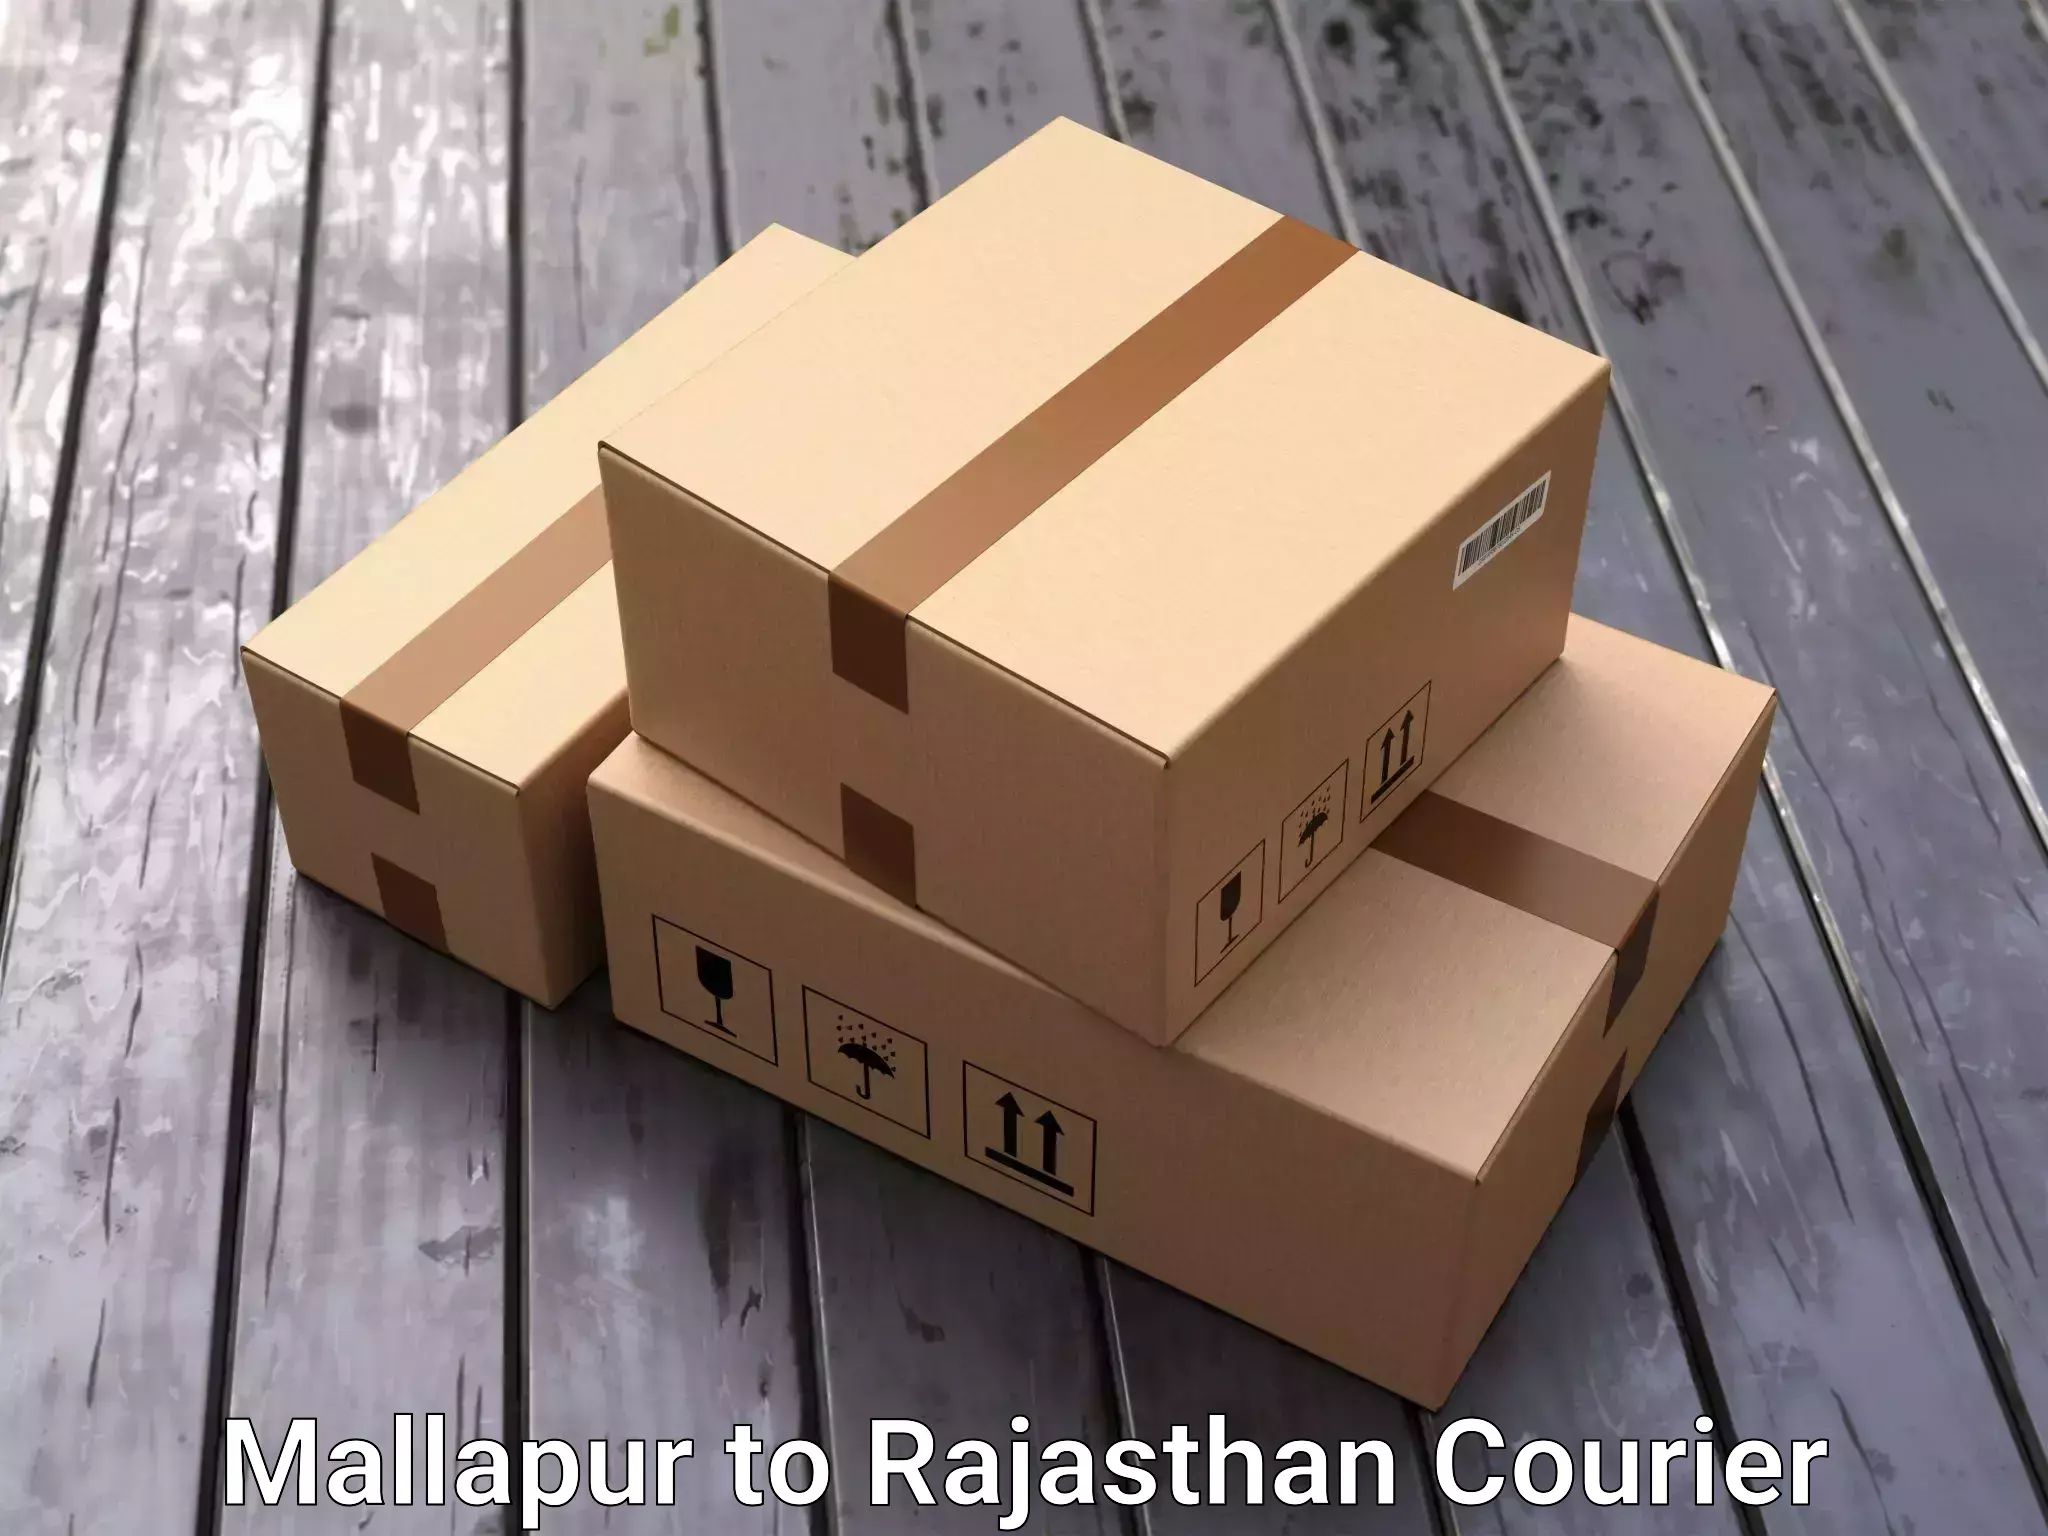 Furniture transport professionals Mallapur to Sarada